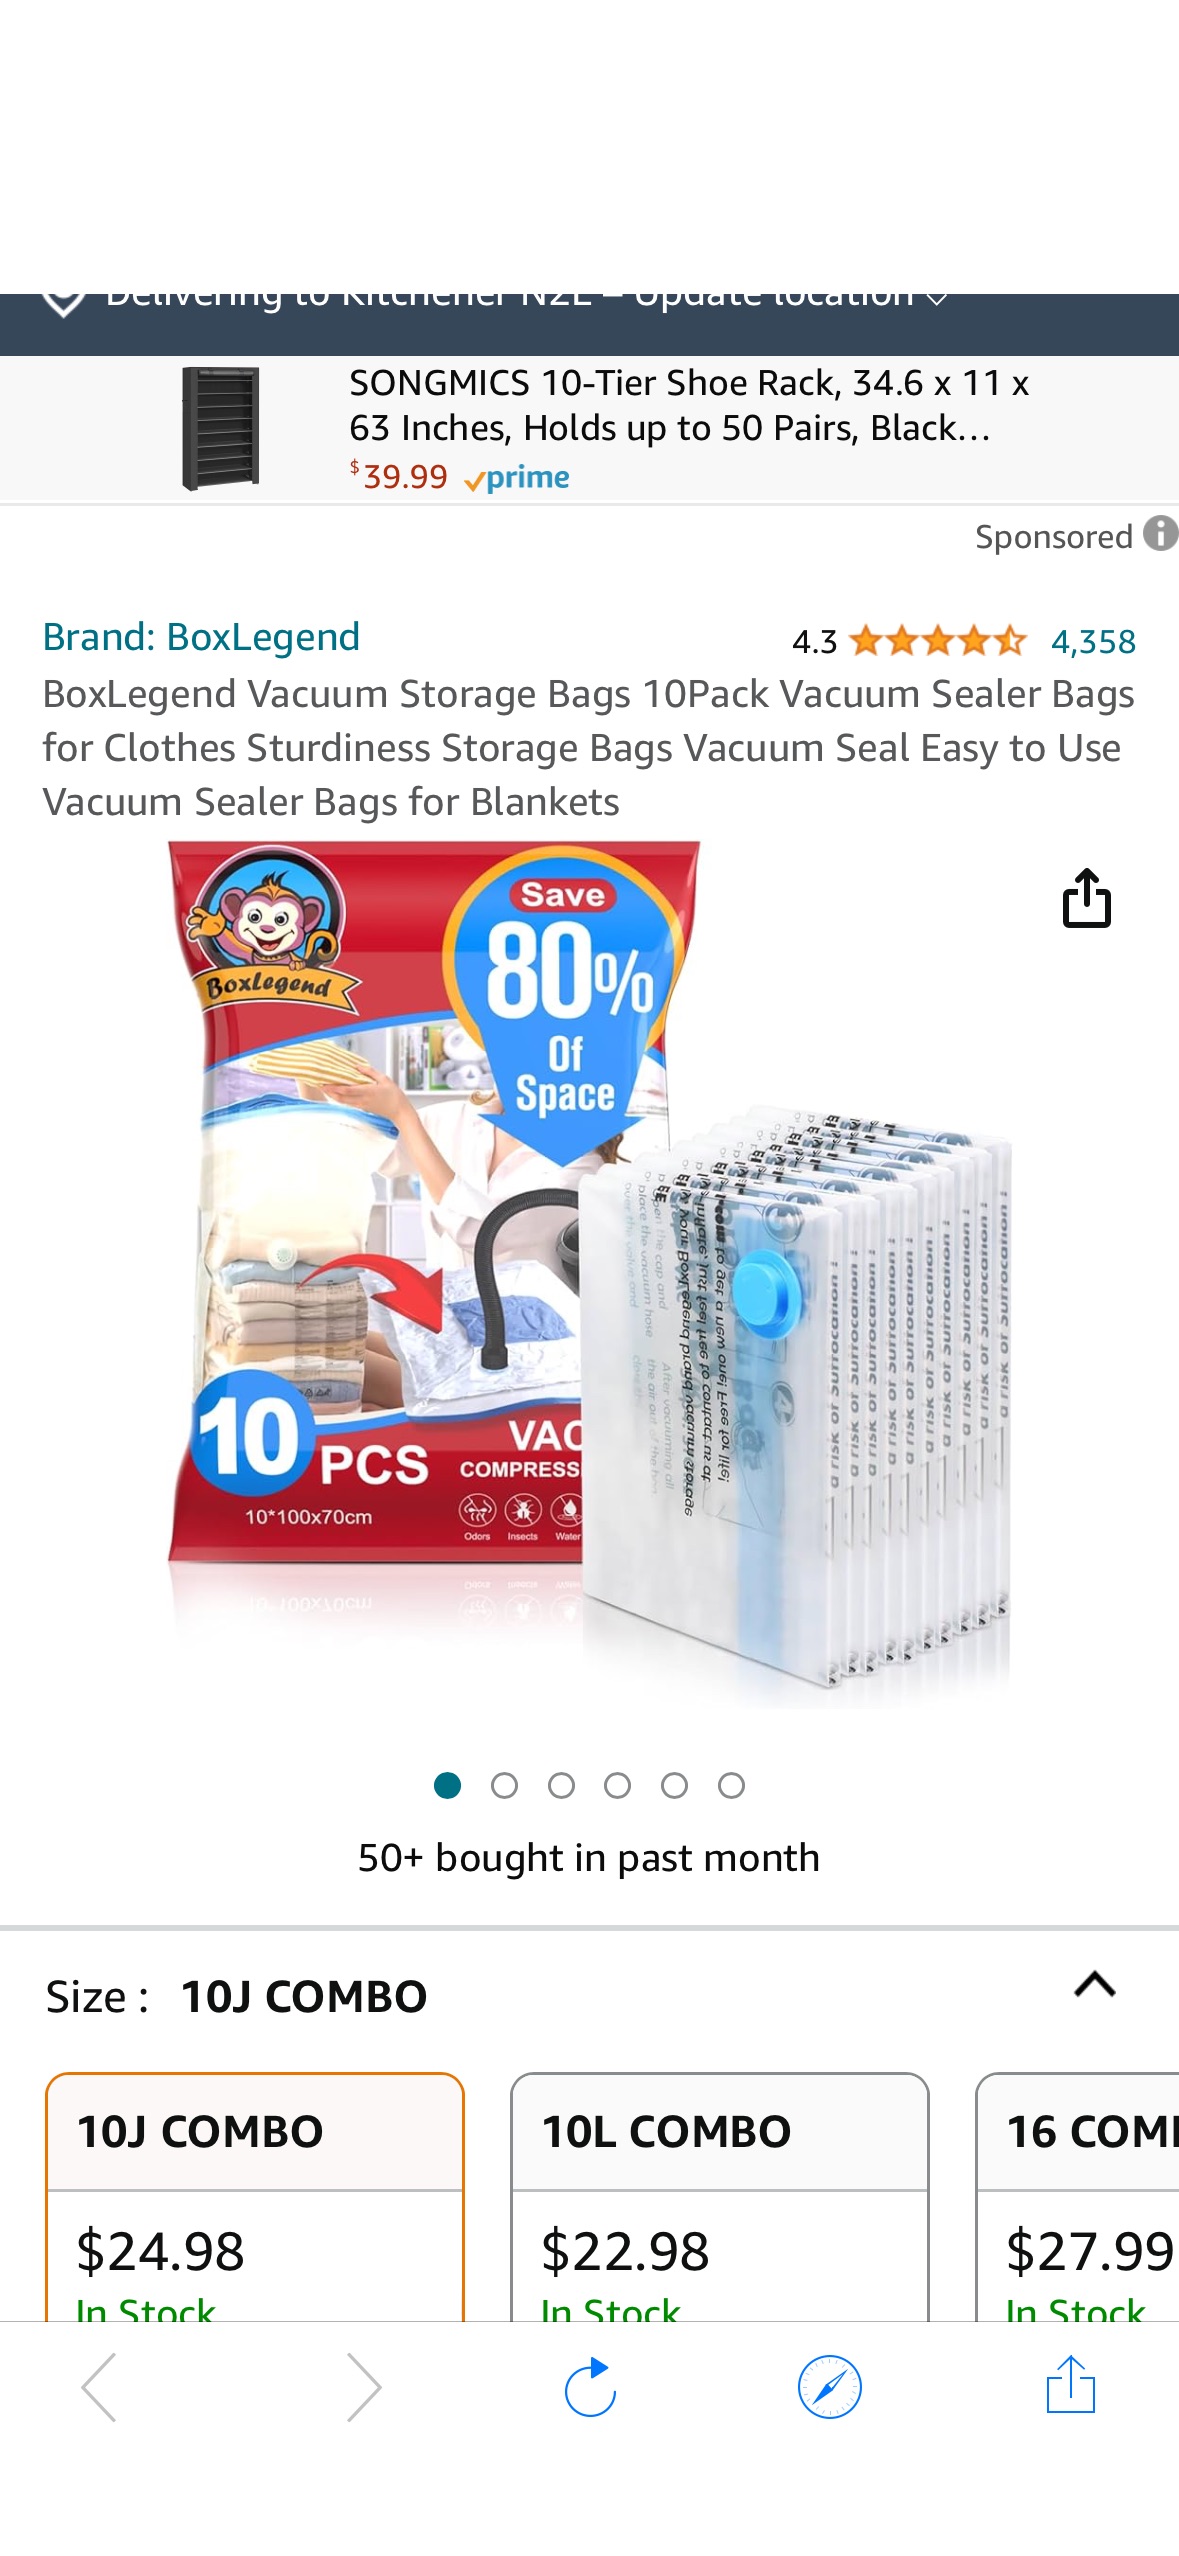 10件套。BoxLegend Vacuum Storage Bags 10Pack Vacuum Sealer Bags for Clothes Sturdiness Storage Bags Vacuum Seal Easy to Use Vacuum Sealer Bags for Blankets : Amazon.ca: Home